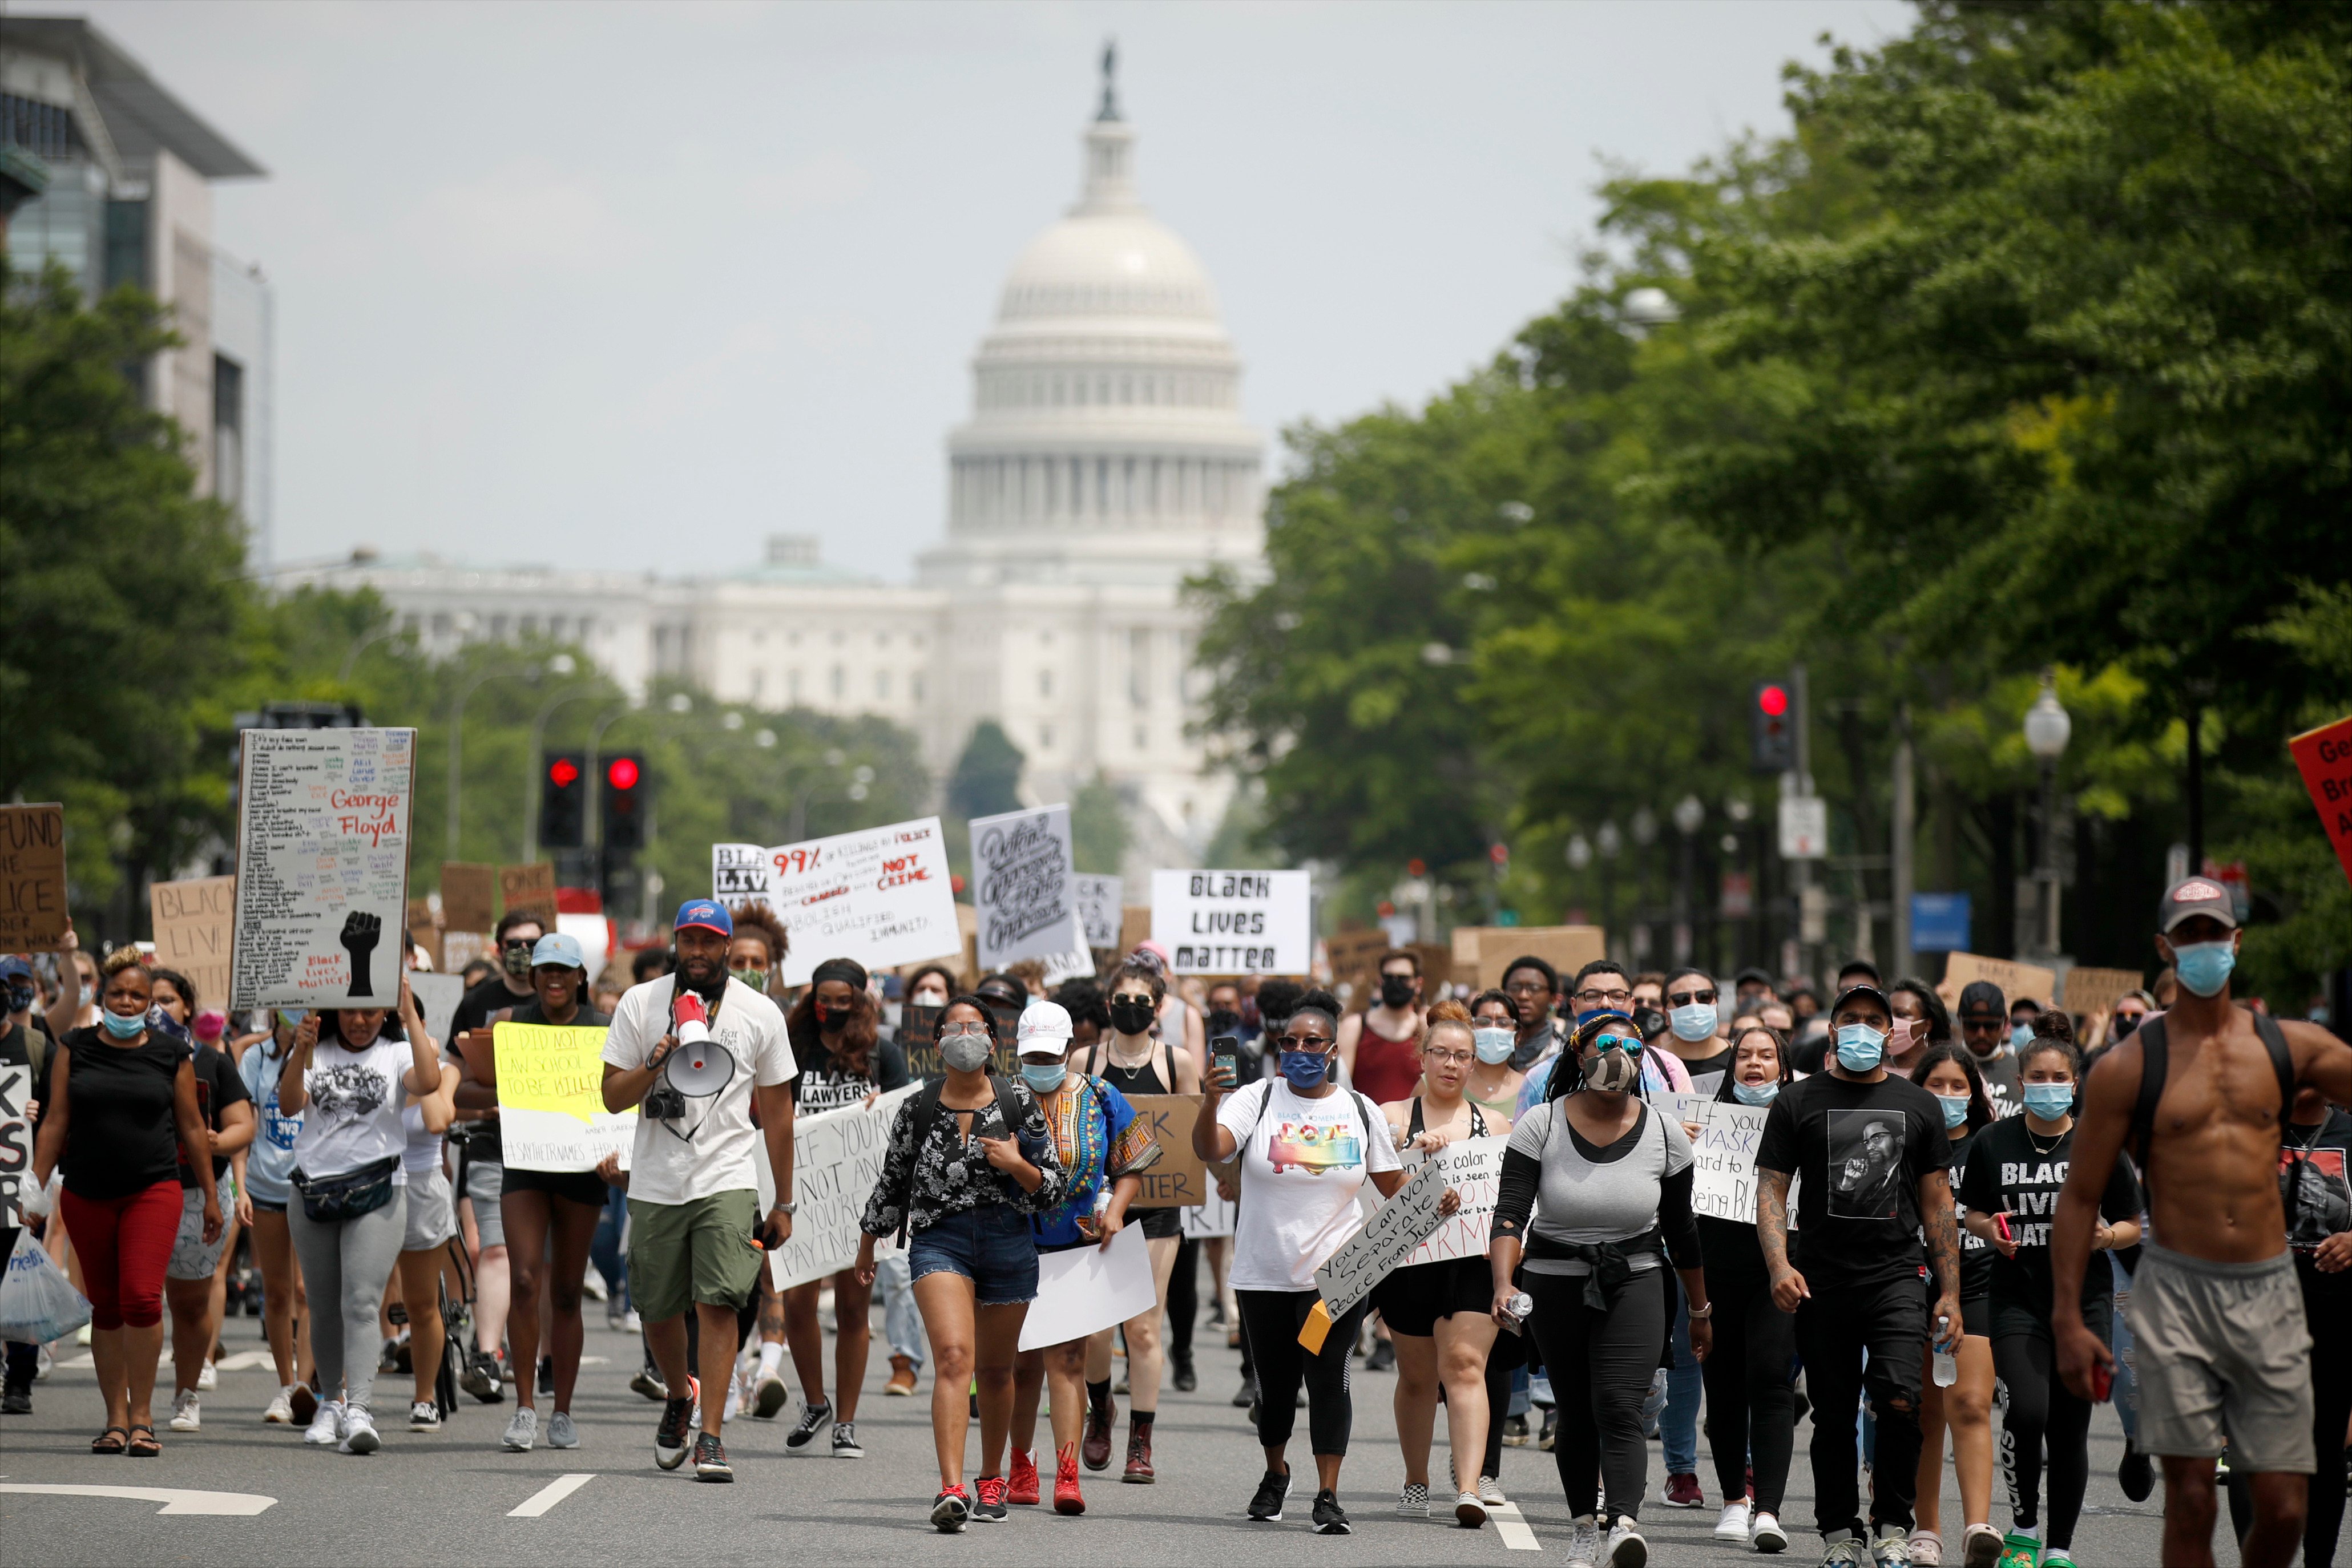 Manifestantes passam pela Avenida Pensilvânia, que liga o Capitólio à Casa Branca, durante manifestação contra o racismo e a brutalidade policial após a morte de George Floyd